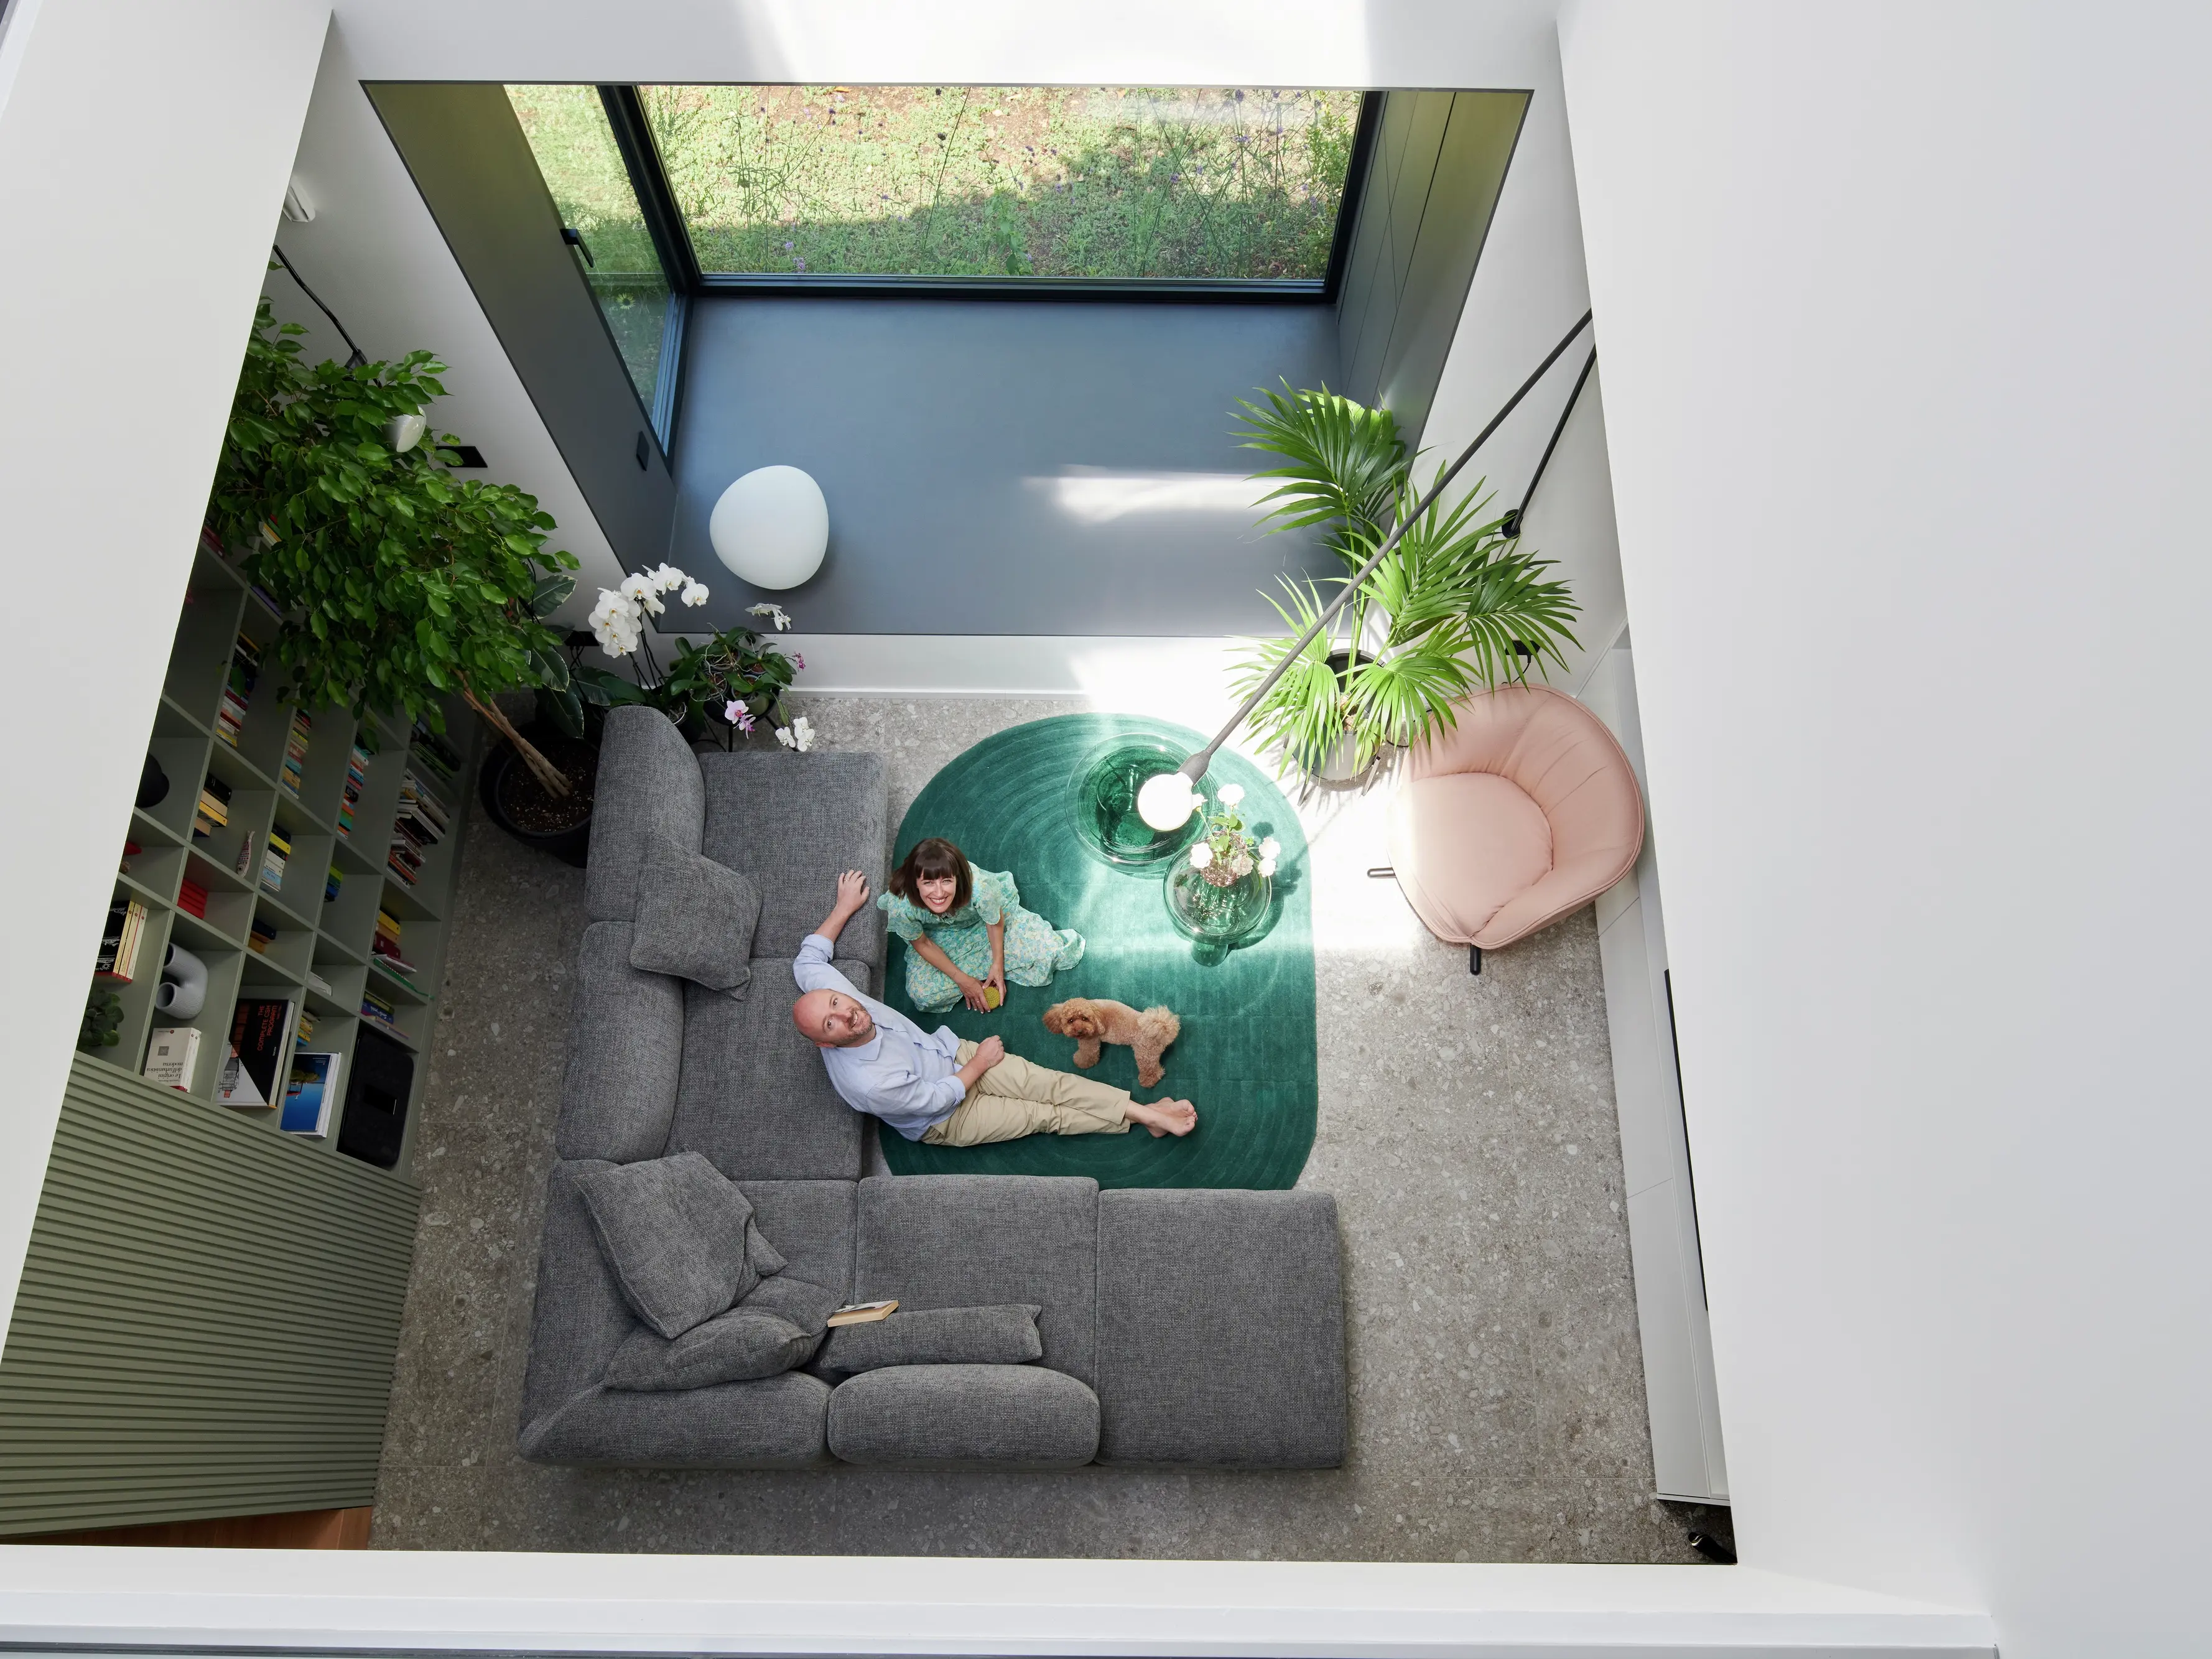 Salon moderne avec lumière naturelle provenant d'une fenêtre de toit VELUX, tapis vert et plantes.